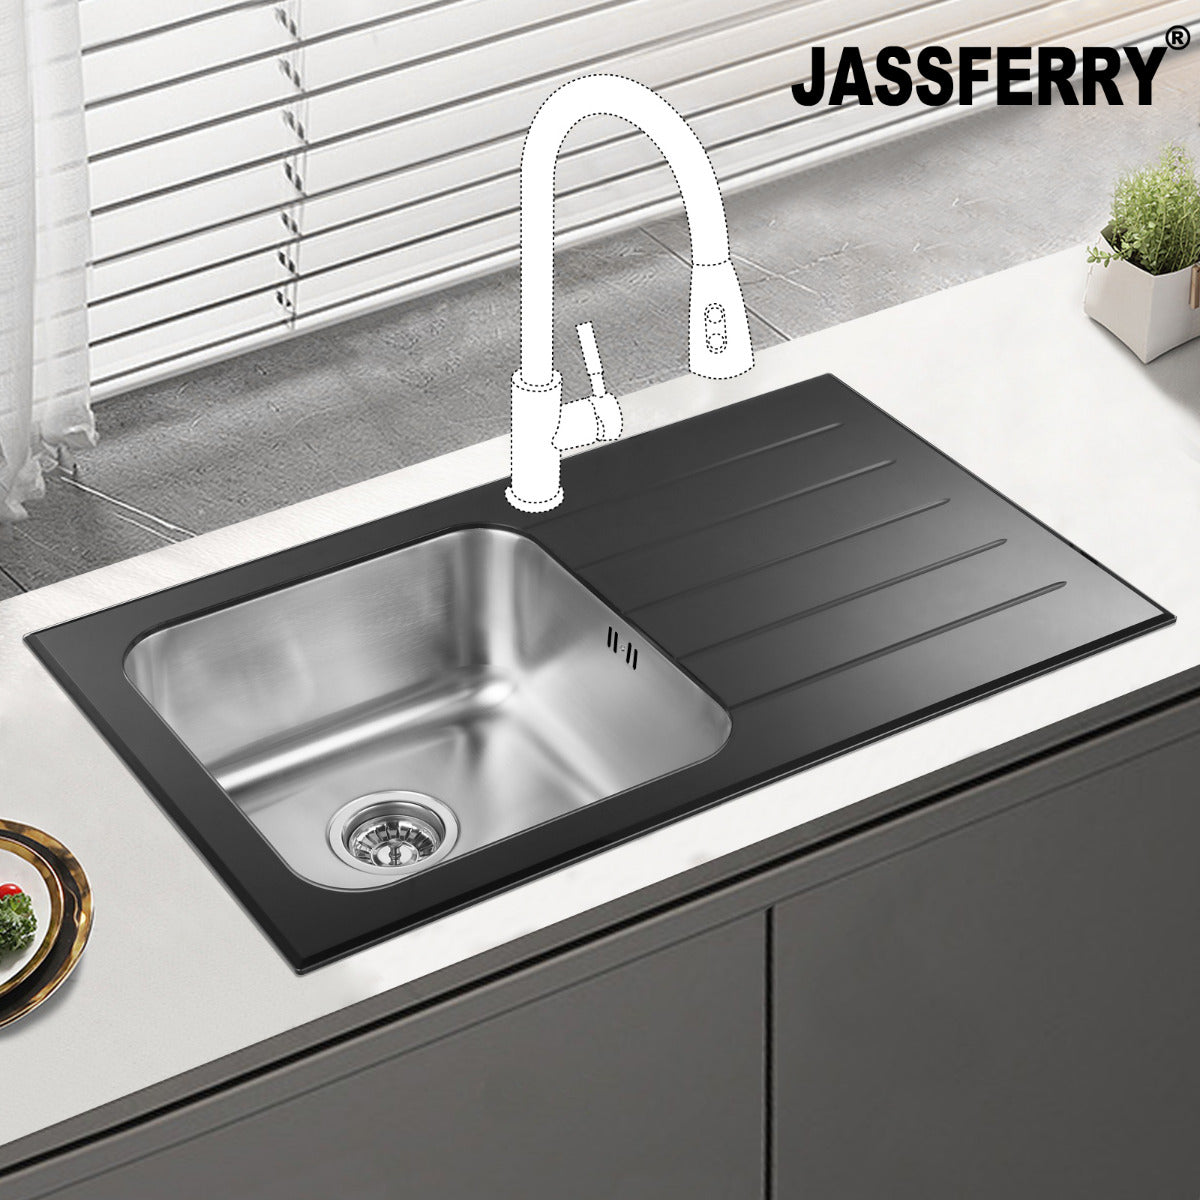 JassferryJASSFERRY Black Glass Top Kitchen Sink 1 Stainless Steel Bowl Righthand Drainer - 772BKitchen Sink